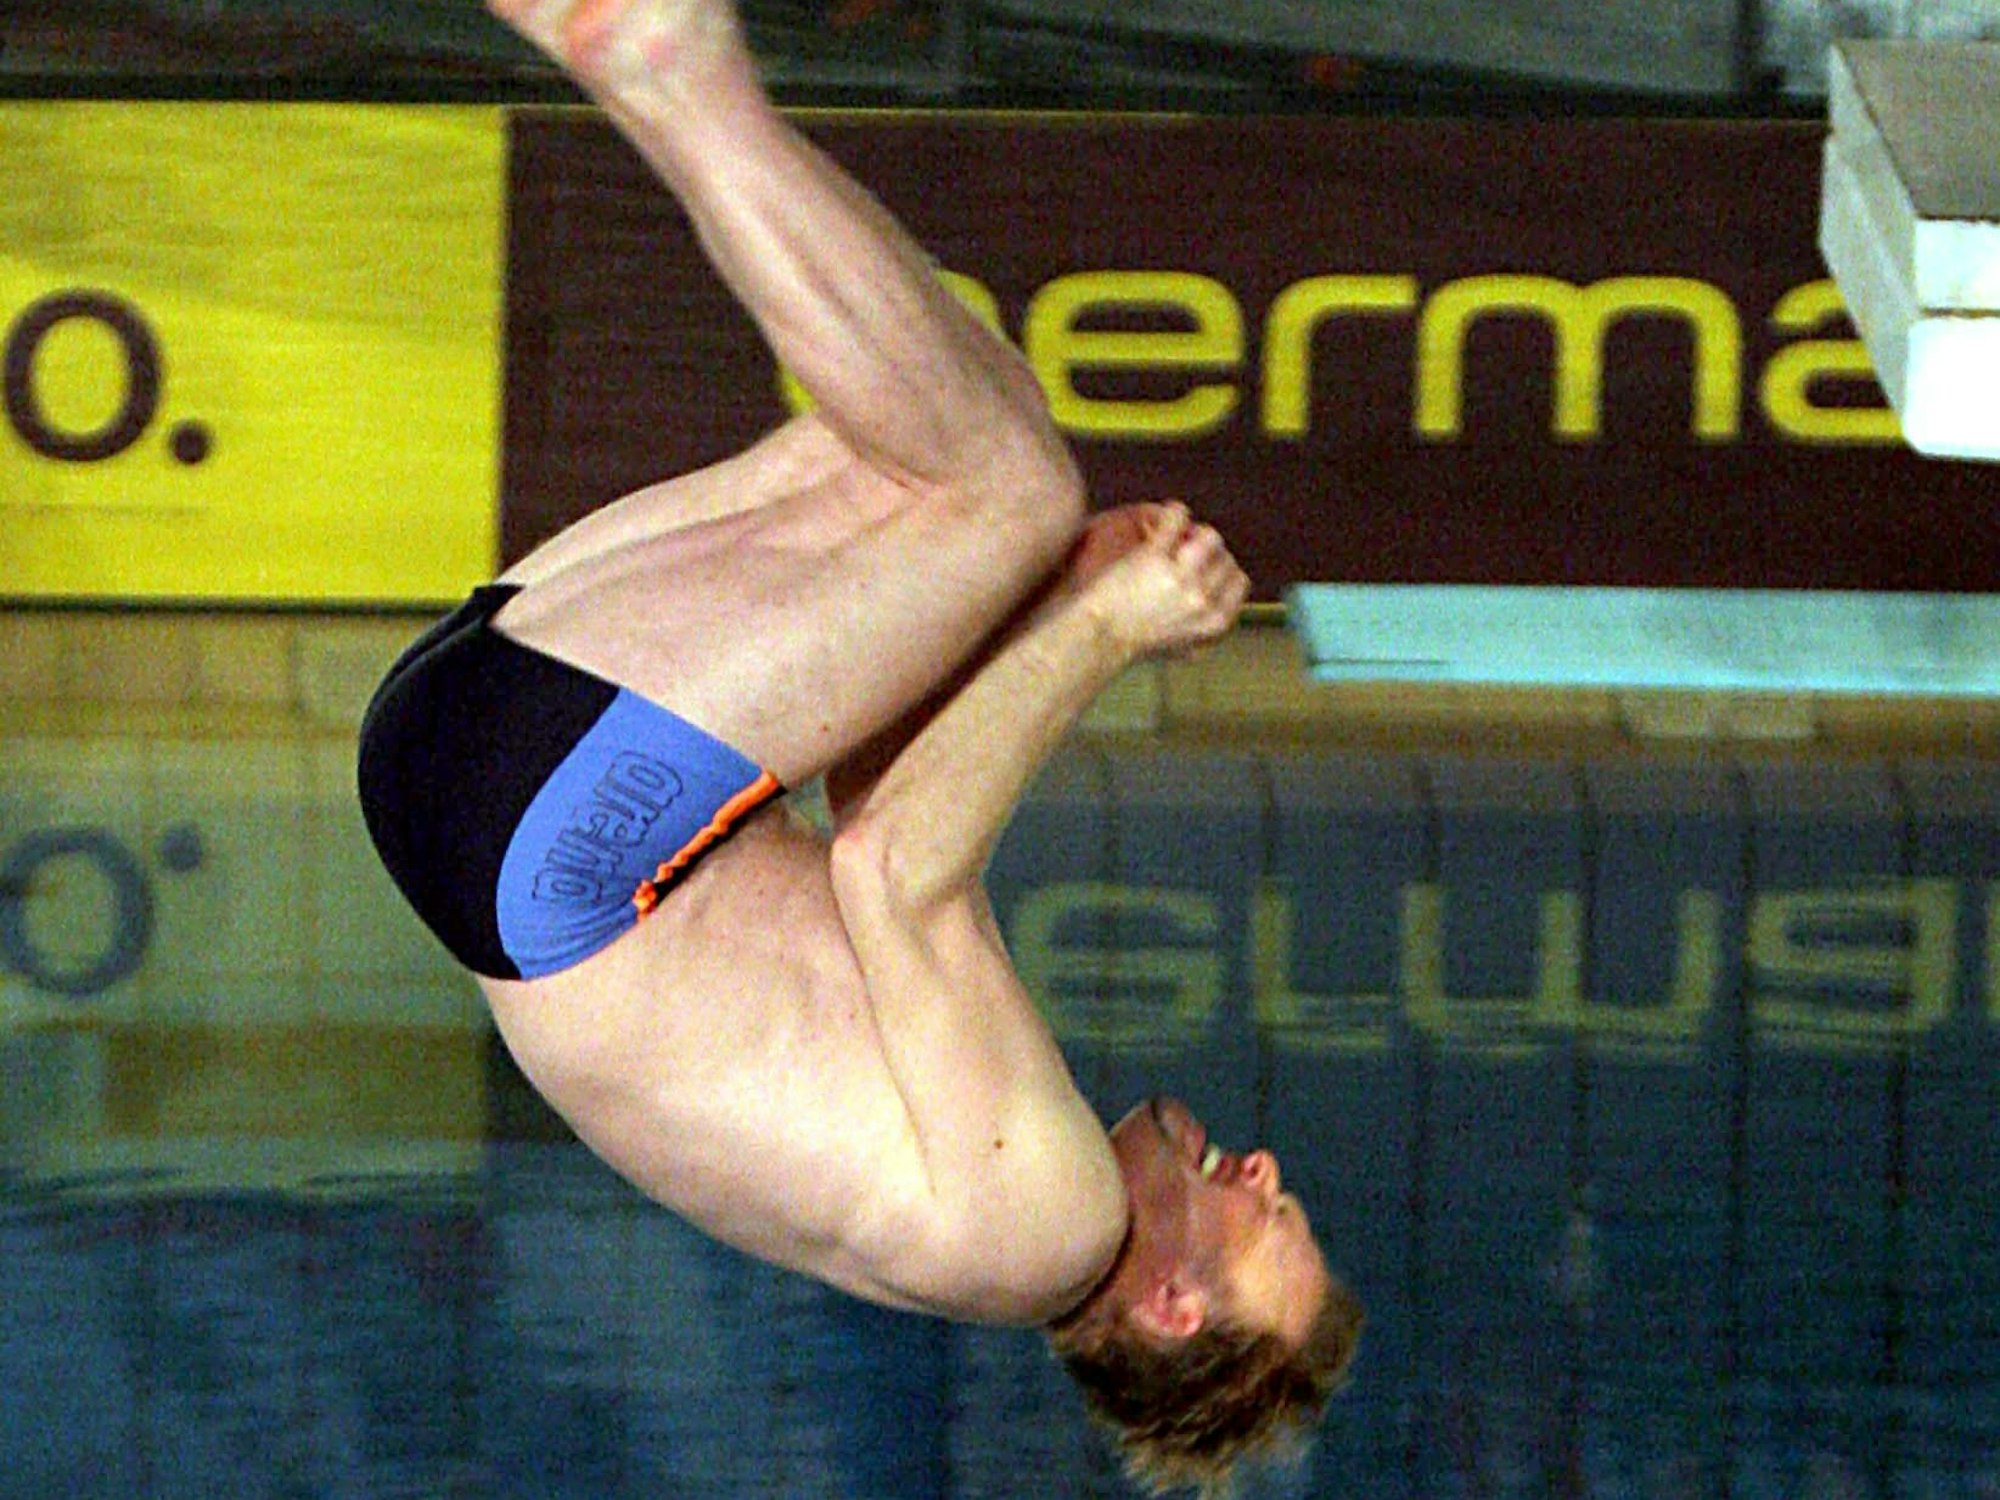 Die sportliche Herausforderung suchte Stefan Raab auch beim „Das große TV total Turmspringen“, an der zahlreiche prominente Gäste unter dem Motto ‚Runter kommen sie alle‘ teilnahmen. Hier springt der Fernseh-Moderator am 16. Dezember 2004 in der Olympia-Schwimmhalle in München vom Drei-Meter-Brett.